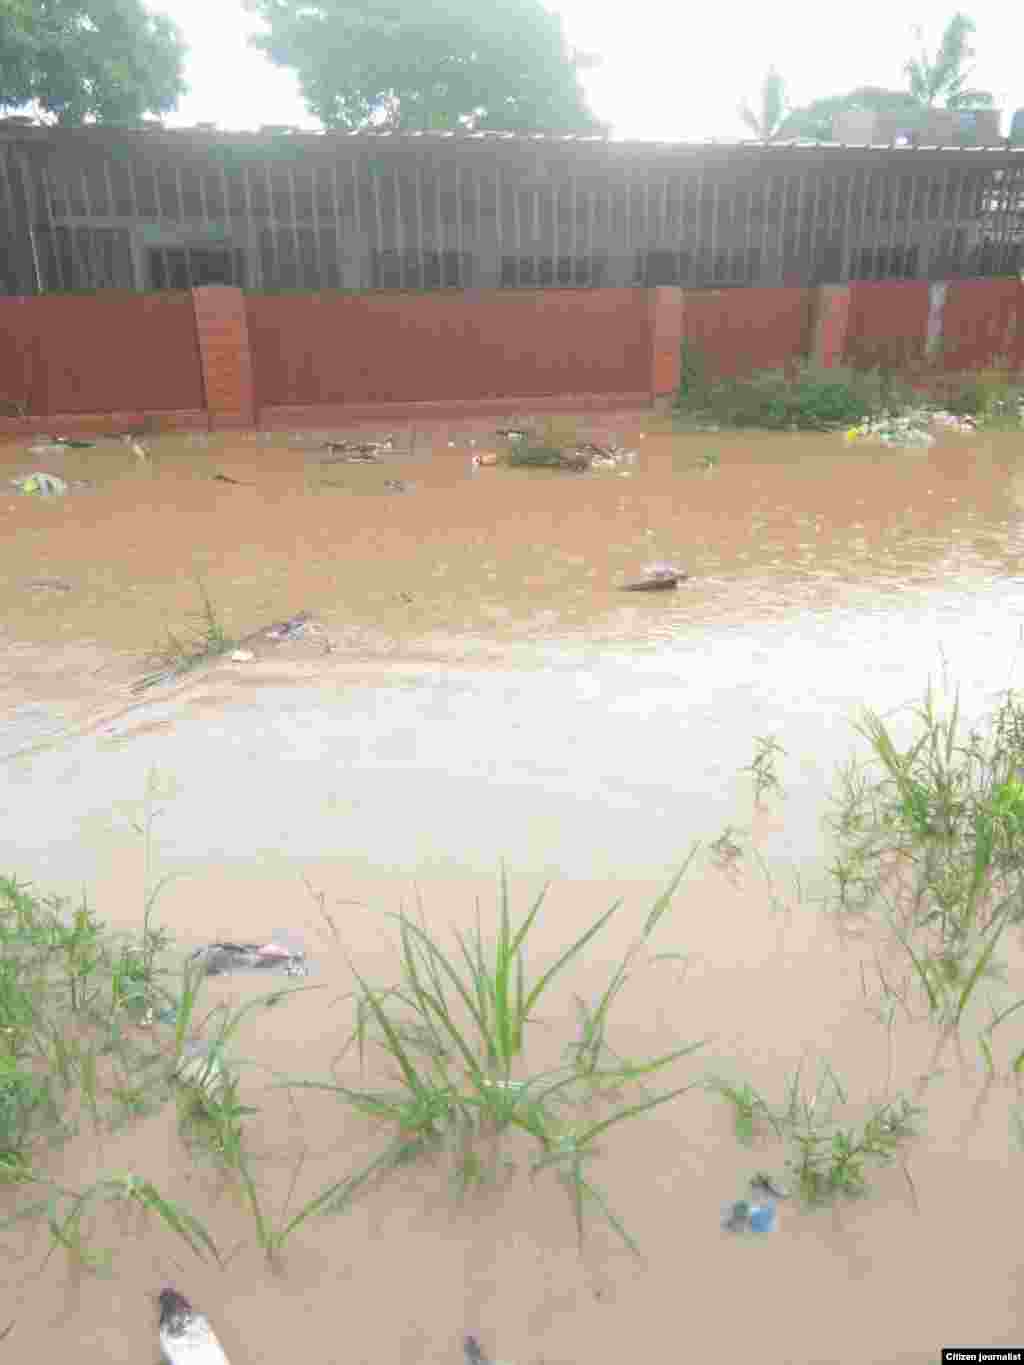 Bairro Aníbal Rocha, Calemba 2, inundado depois das chuvas de 18 de Abril. Distrito Kilamba Kiaxi, Luanda. Angola